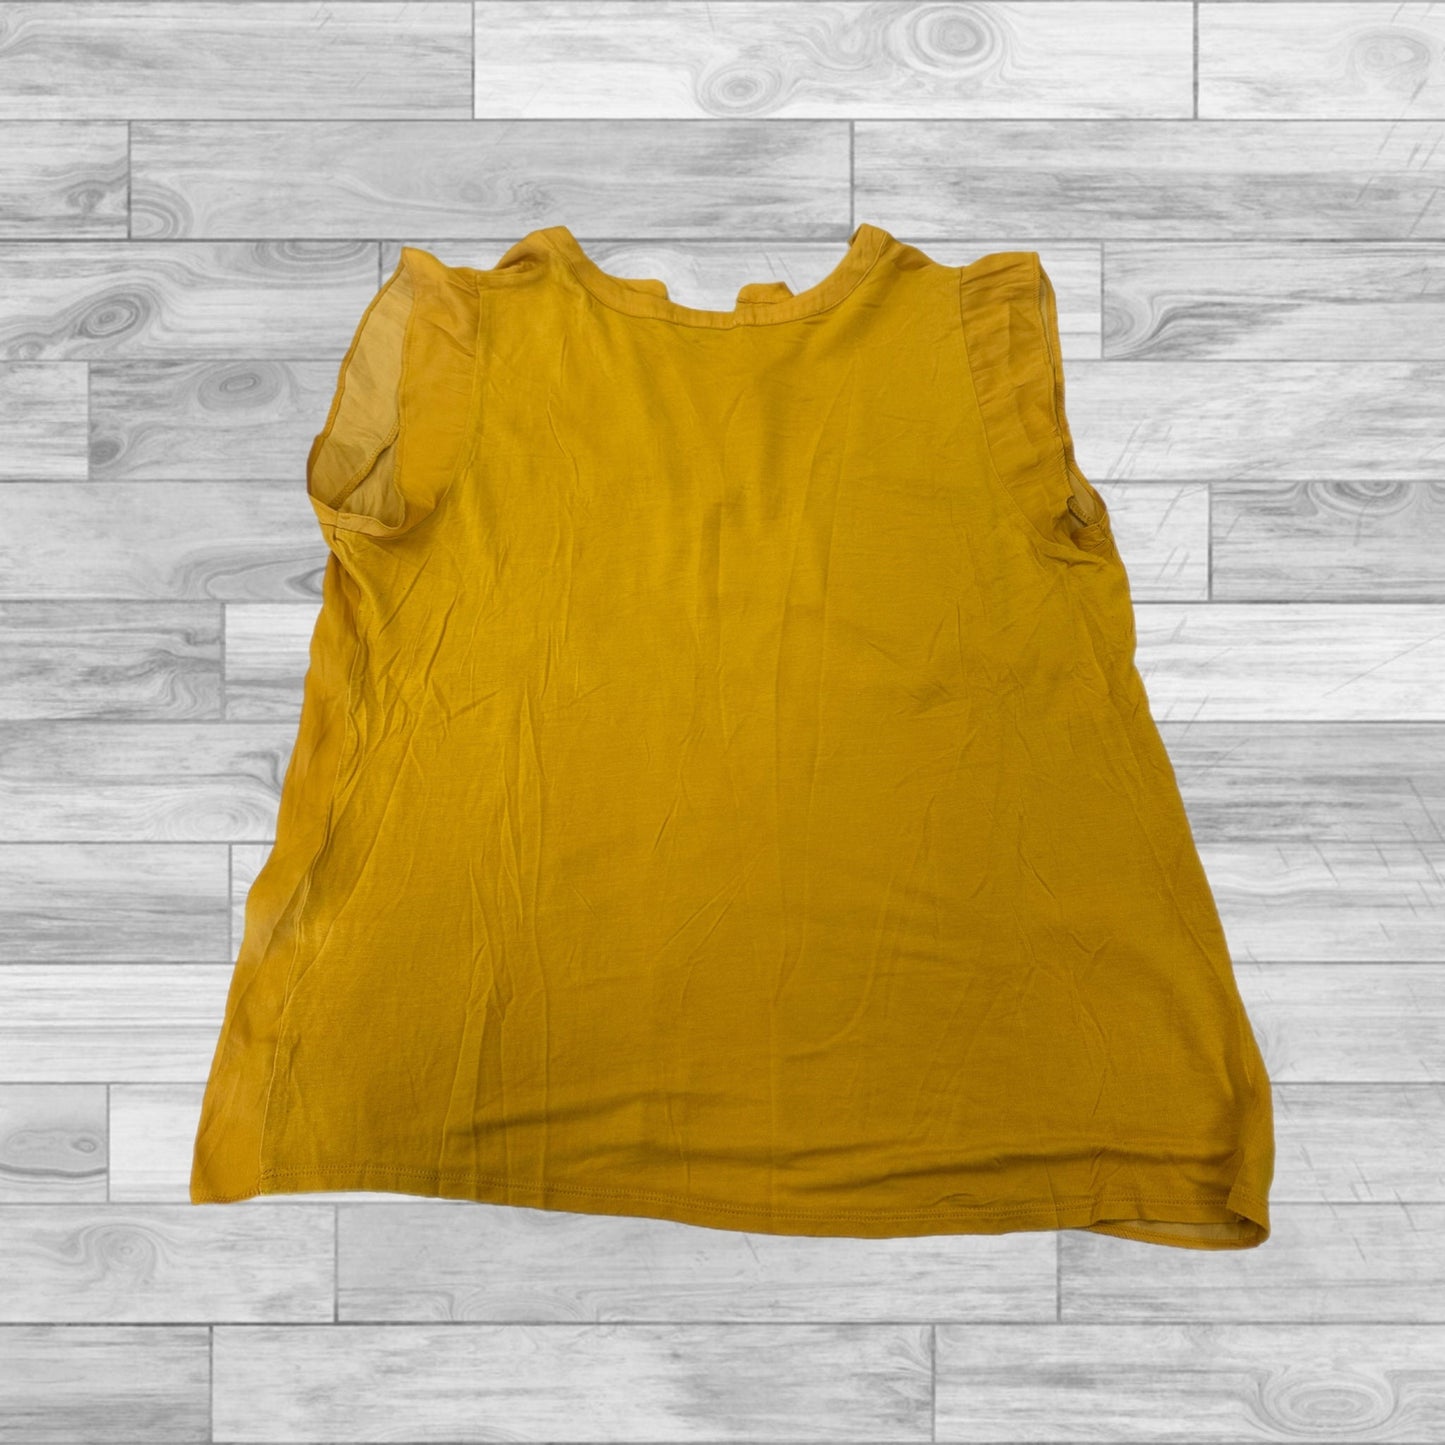 Yellow Top Short Sleeve Loft, Size Xl